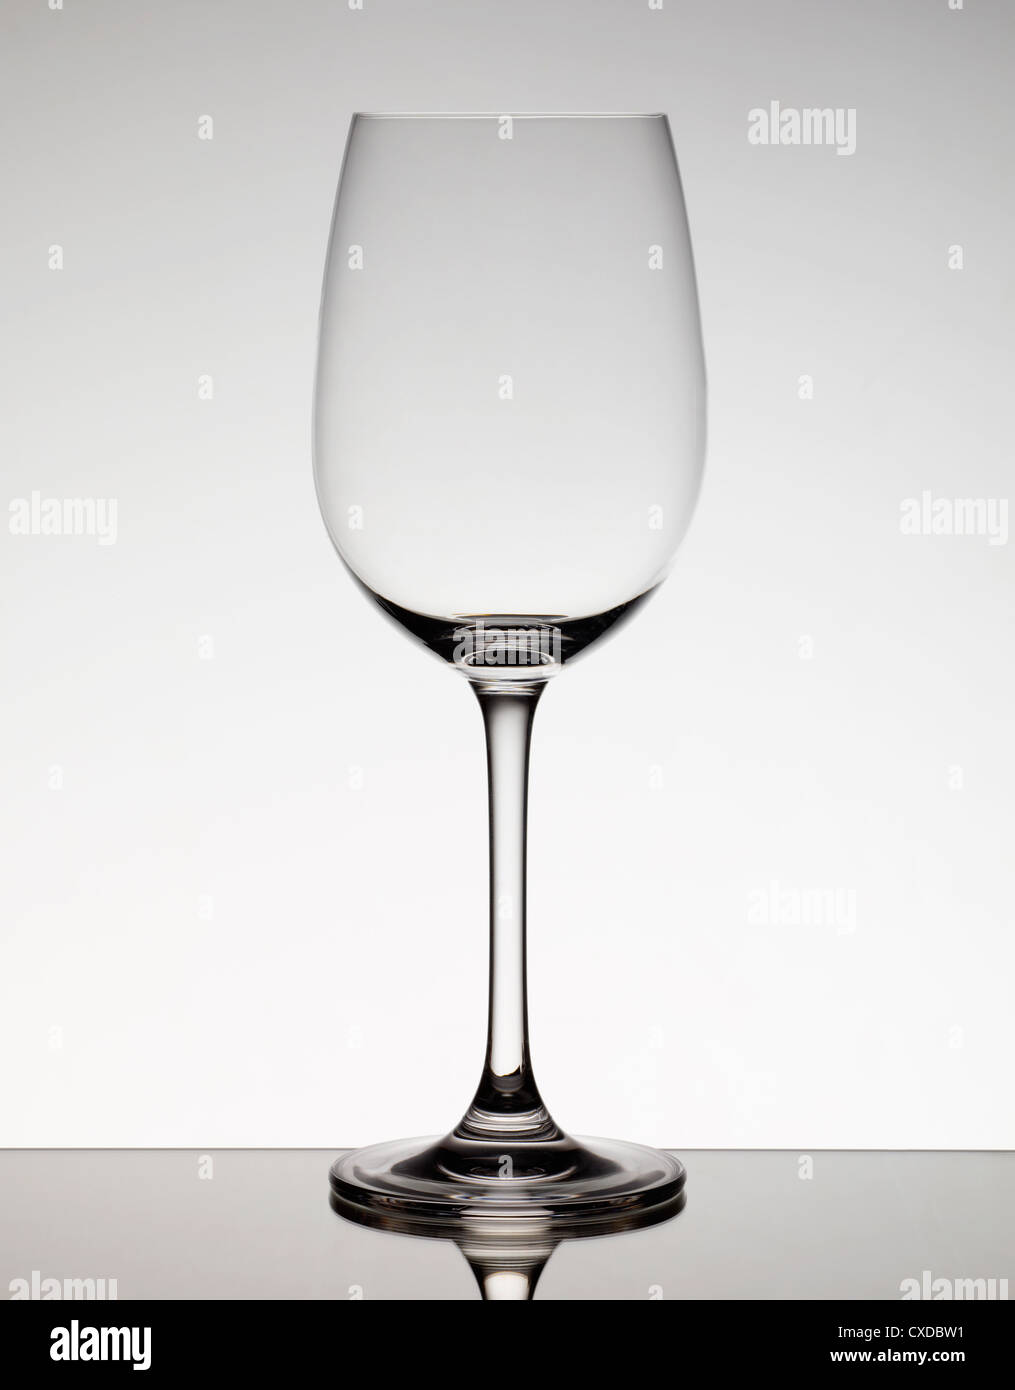 https://c8.alamy.com/comp/CXDBW1/empty-wine-glass-CXDBW1.jpg